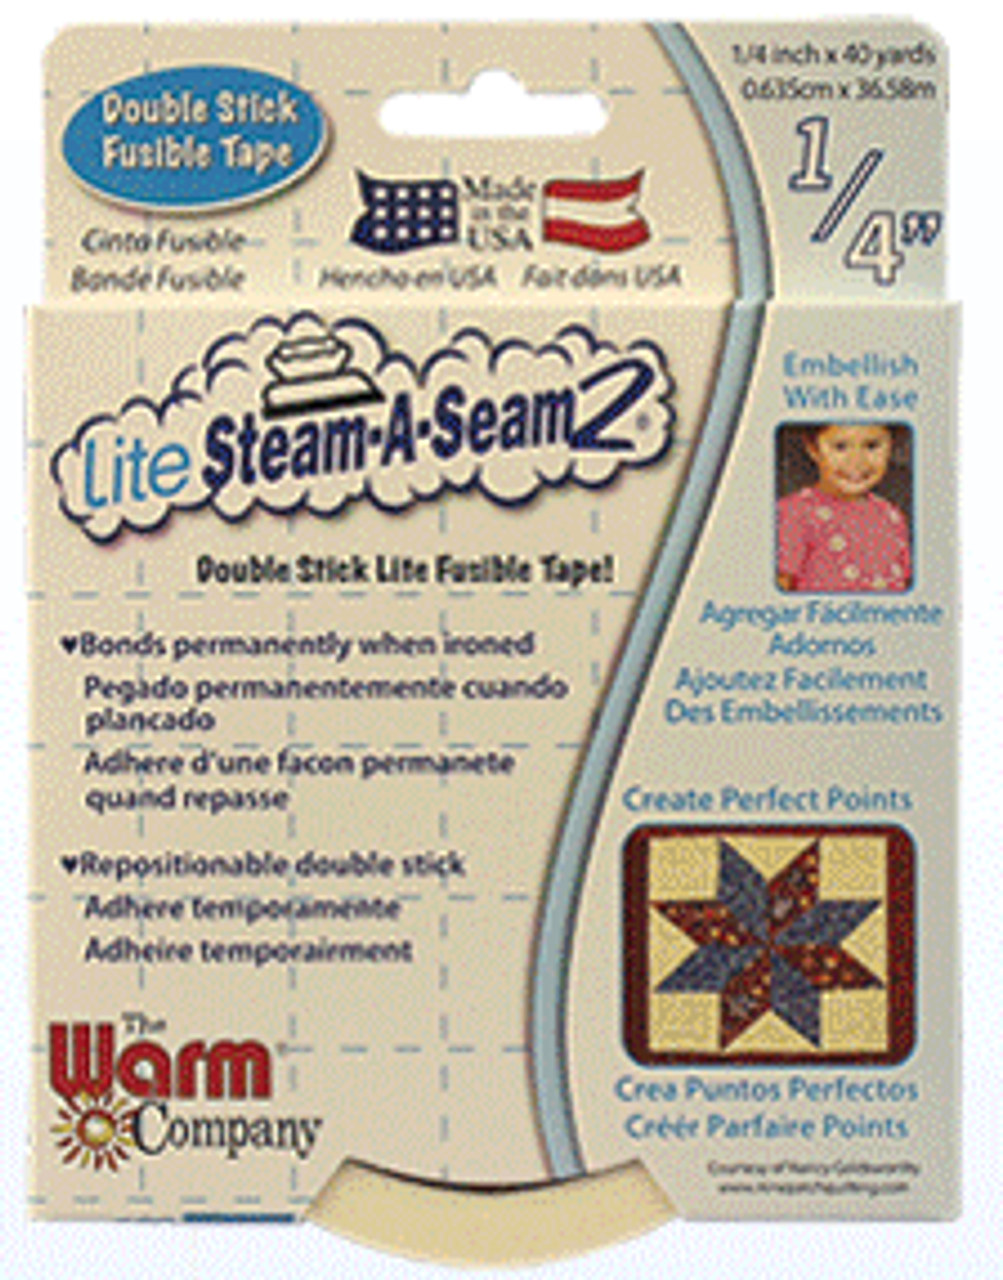 Warm Company Lite Steam-A-Seam 2-Double Stick Fusible Web